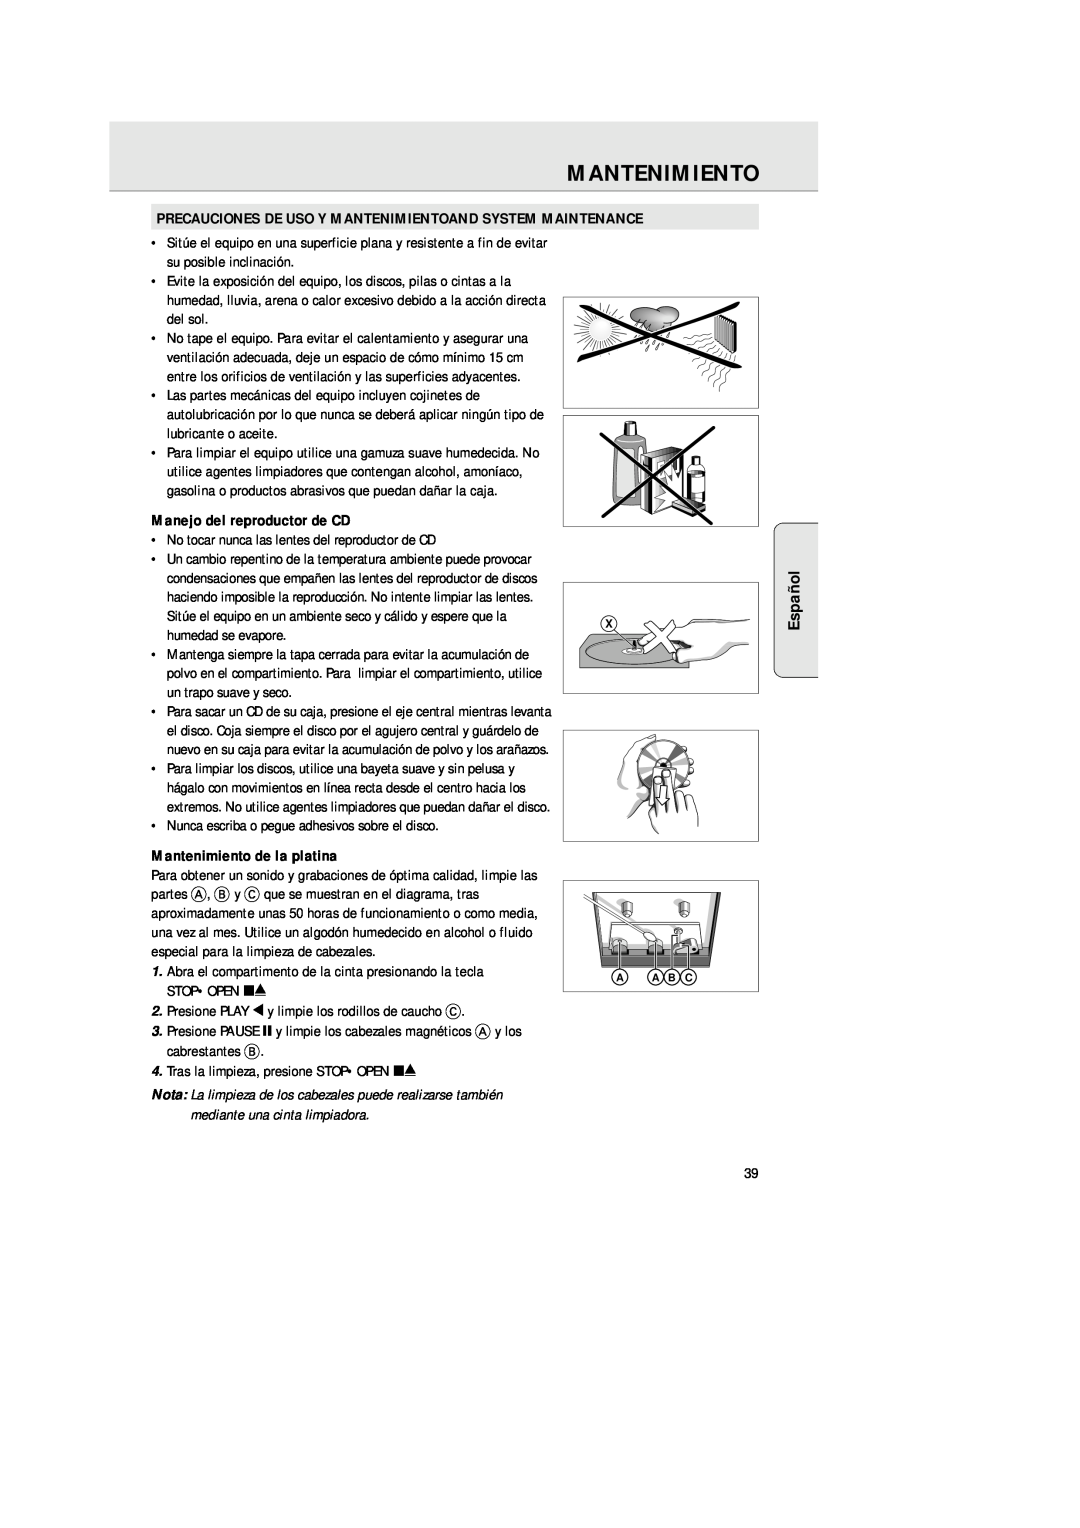 Philips AZ 1025 manual Español, Manejo del reproductor de CD, Mantenimiento de la platina 